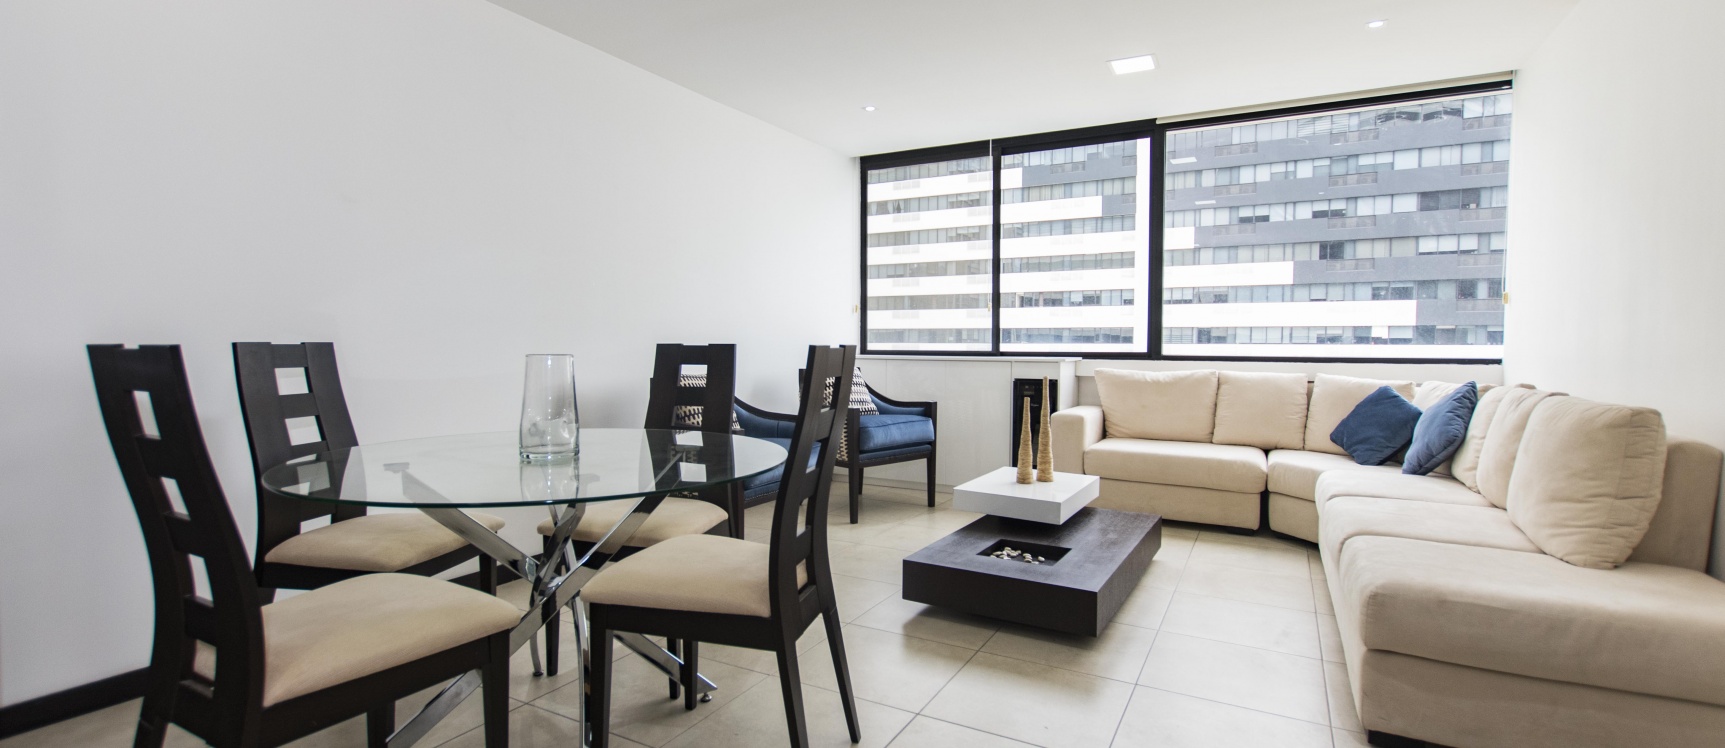 GeoBienes - Suite amoblada en venta ubicada en Torre Bellini I, Puerto Santa Ana - Plusvalia Guayaquil Casas de venta y alquiler Inmobiliaria Ecuador